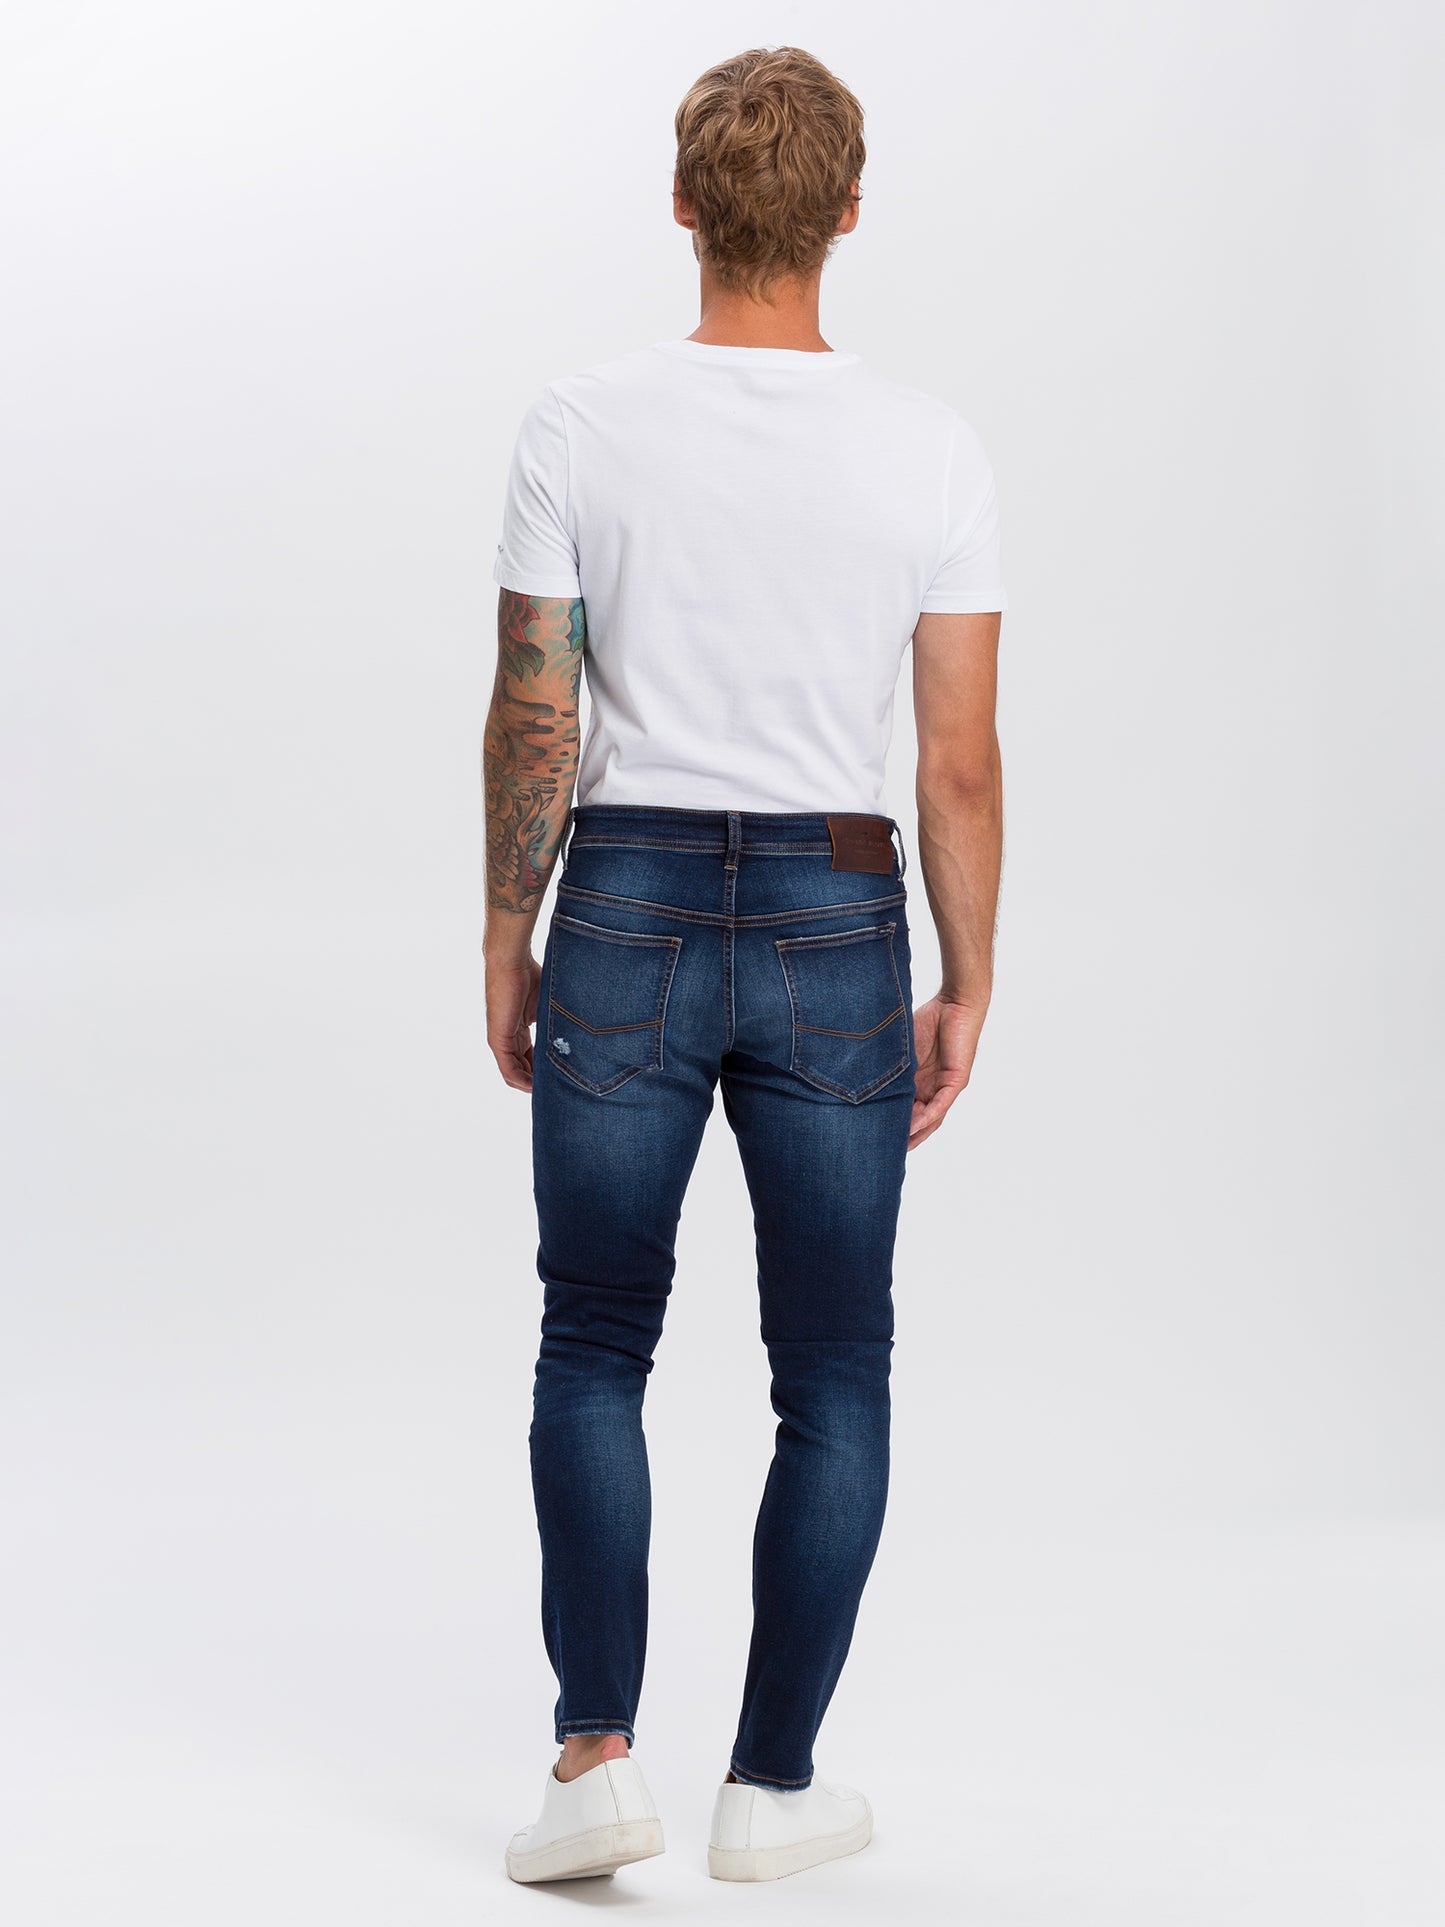 Scott Herren Jeans Skinny Fit Regular Waist dunkelblau